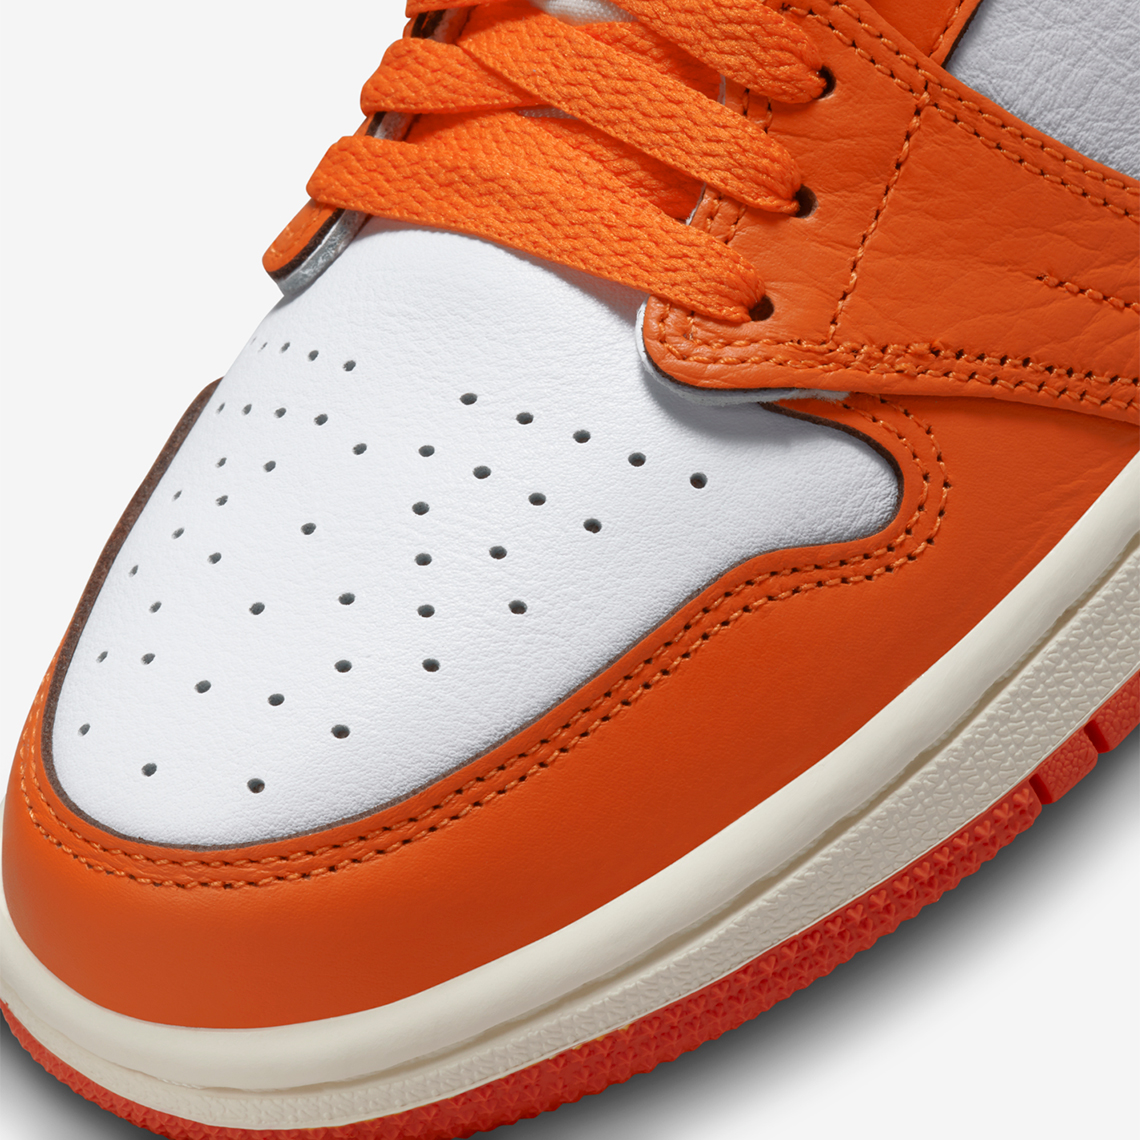 Nike Air Jordan 5 Orange Blaze 32cm